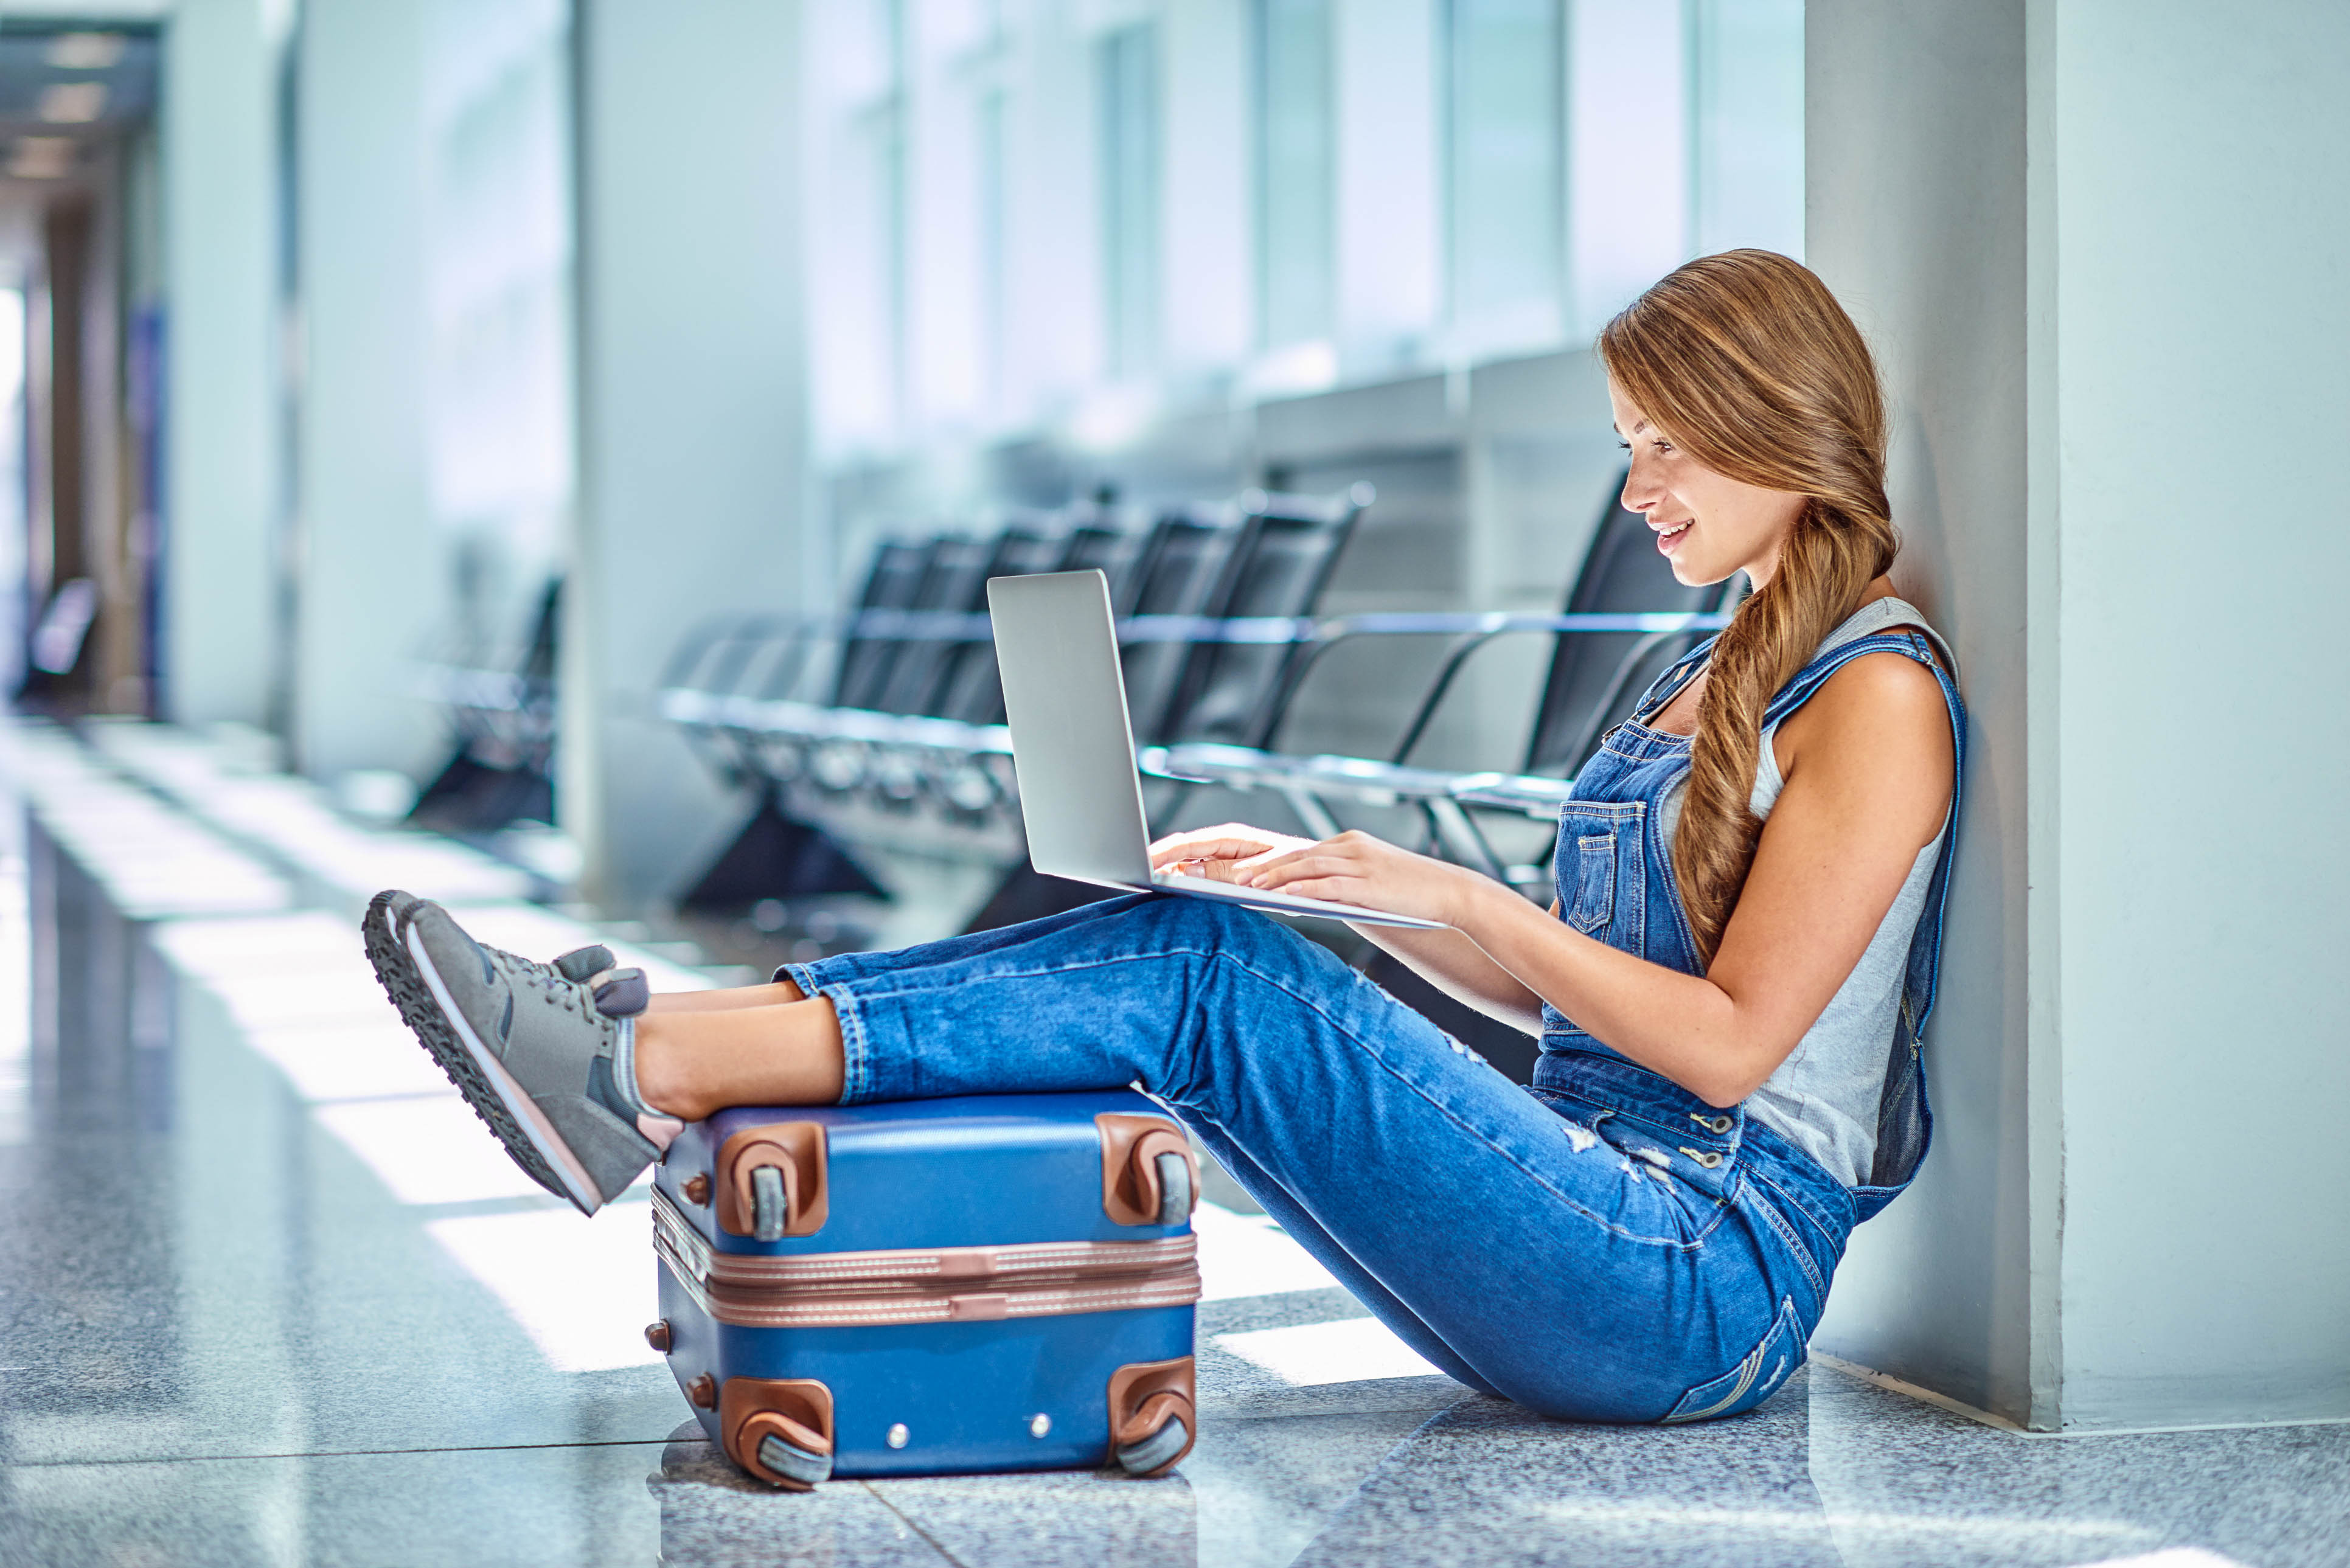 Wartezeit am Flughafen - Frau mit Laptop, Arbeit